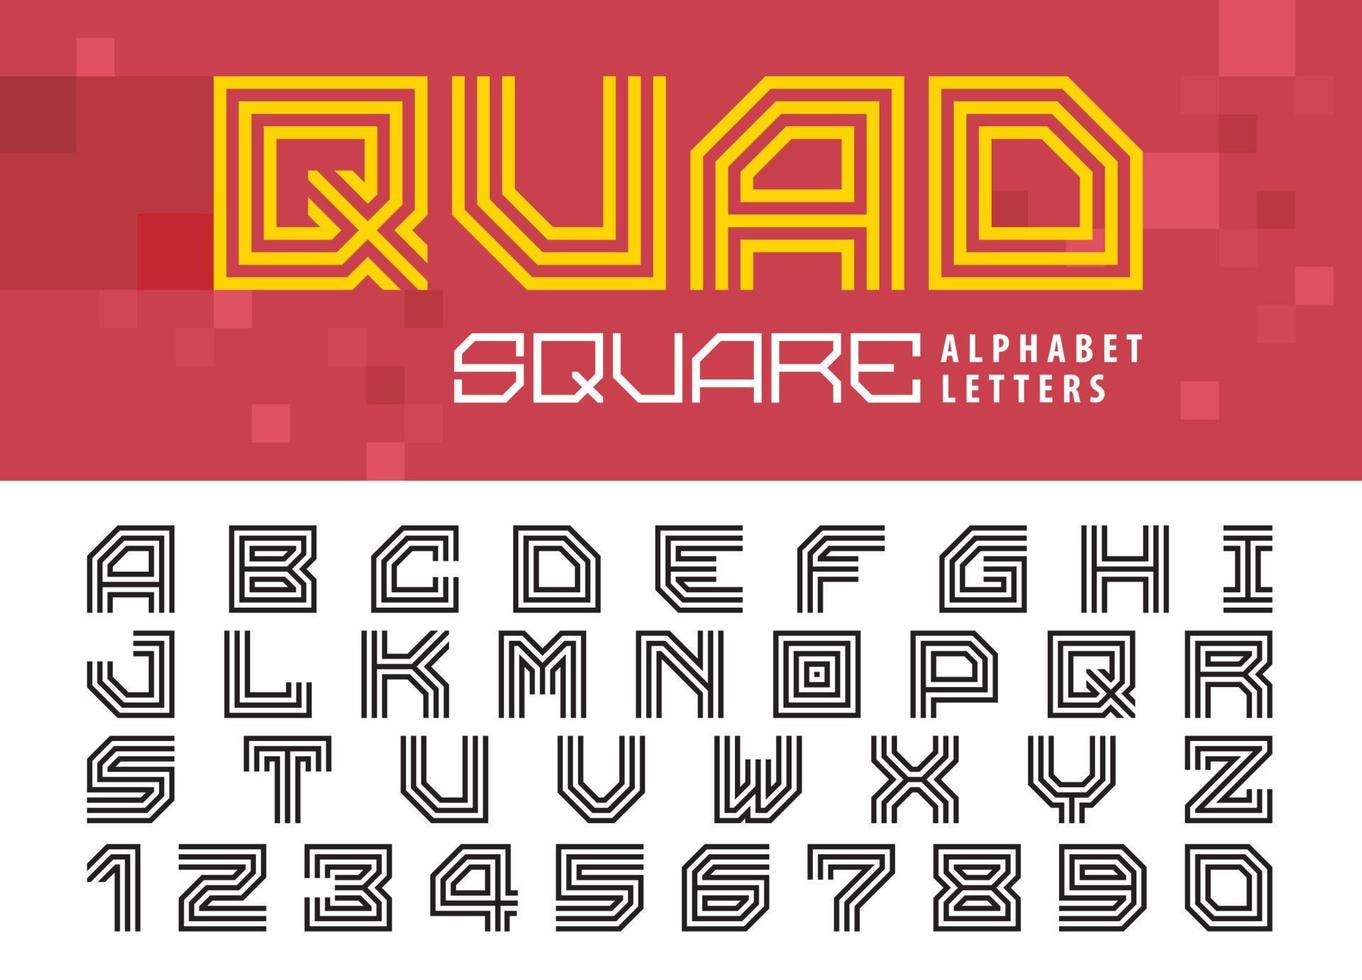 lettres et chiffres de l'alphabet carré à trois lignes, jeu de polices de lettres géométriques pour la technologie, le sport, l'avenir. vecteur